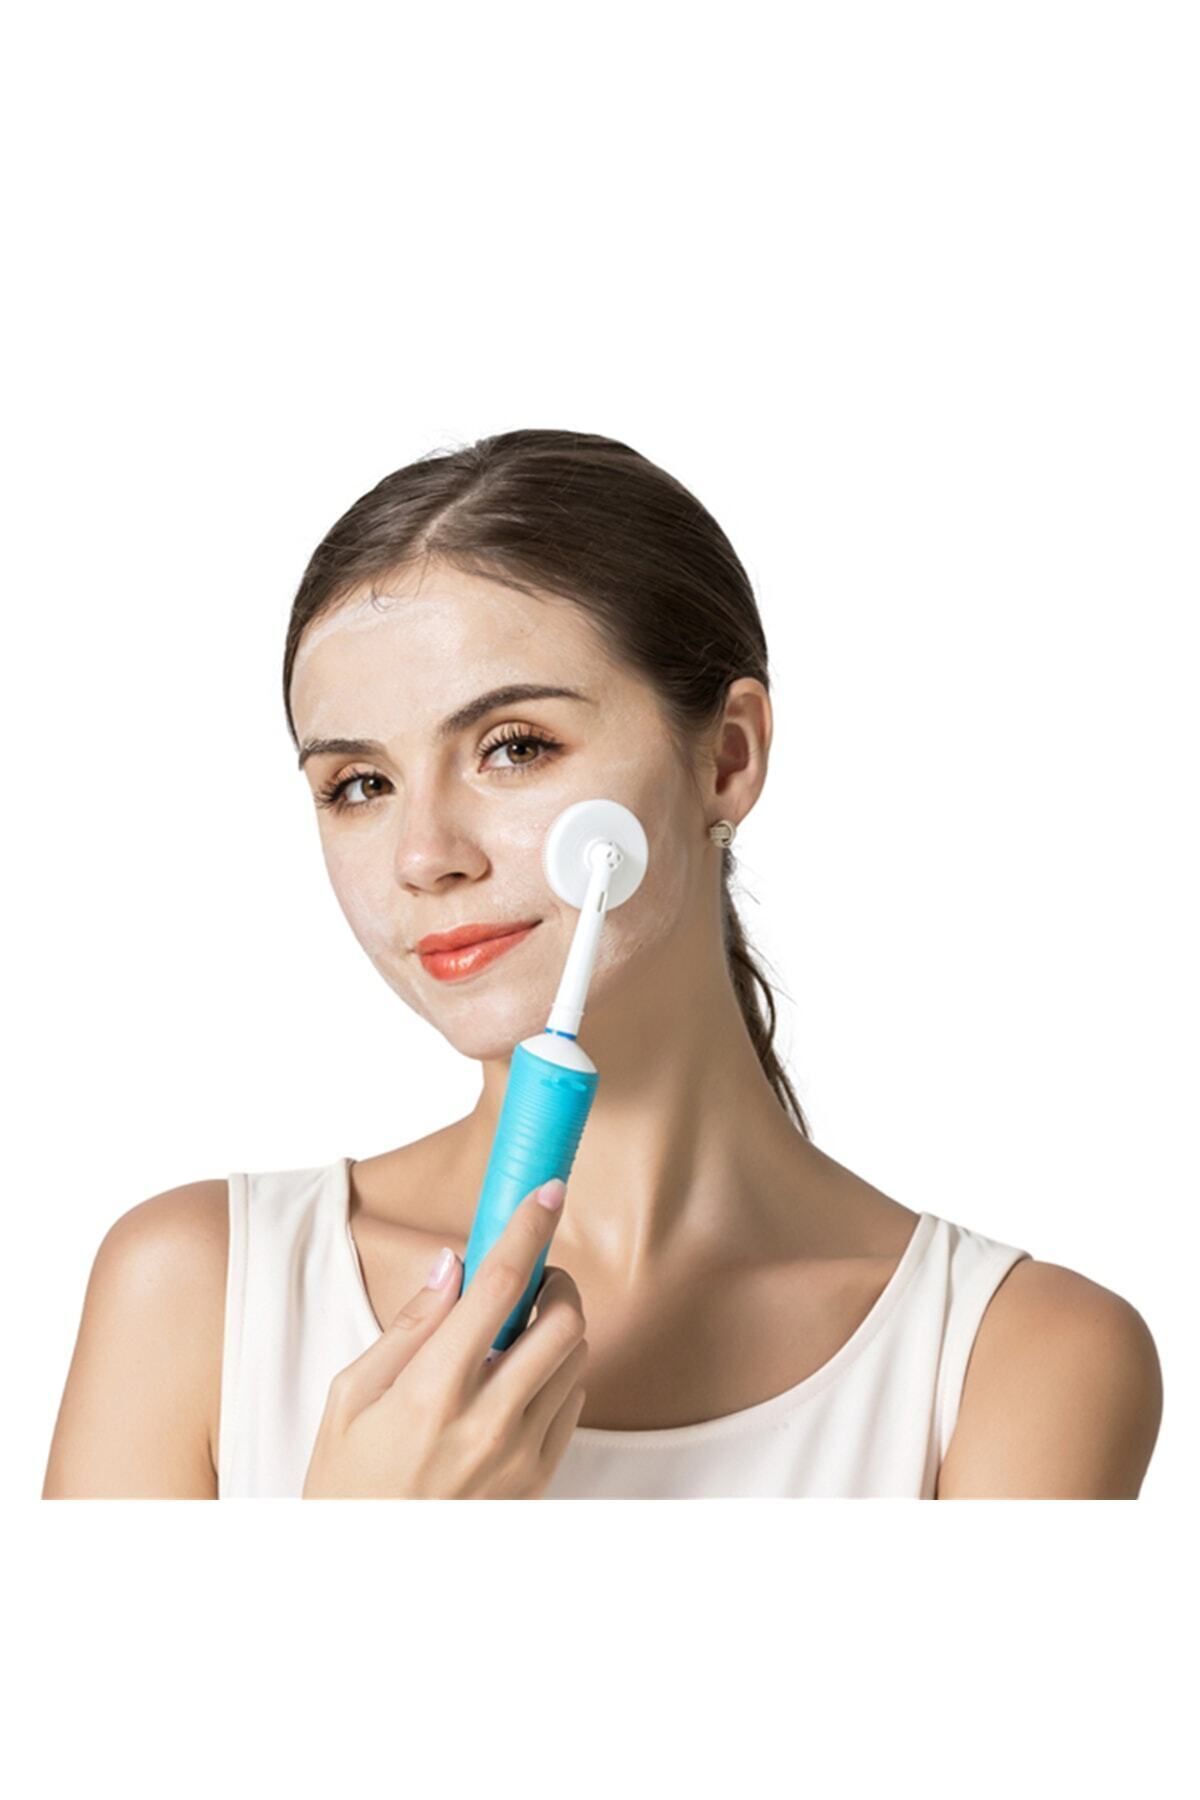 Toocare Oral-b Şarjlı Ve Pilli Diş Fırçaları Için Yüz-makyaj Temizleme Ve Masaj Aparatı - Pembe Renk